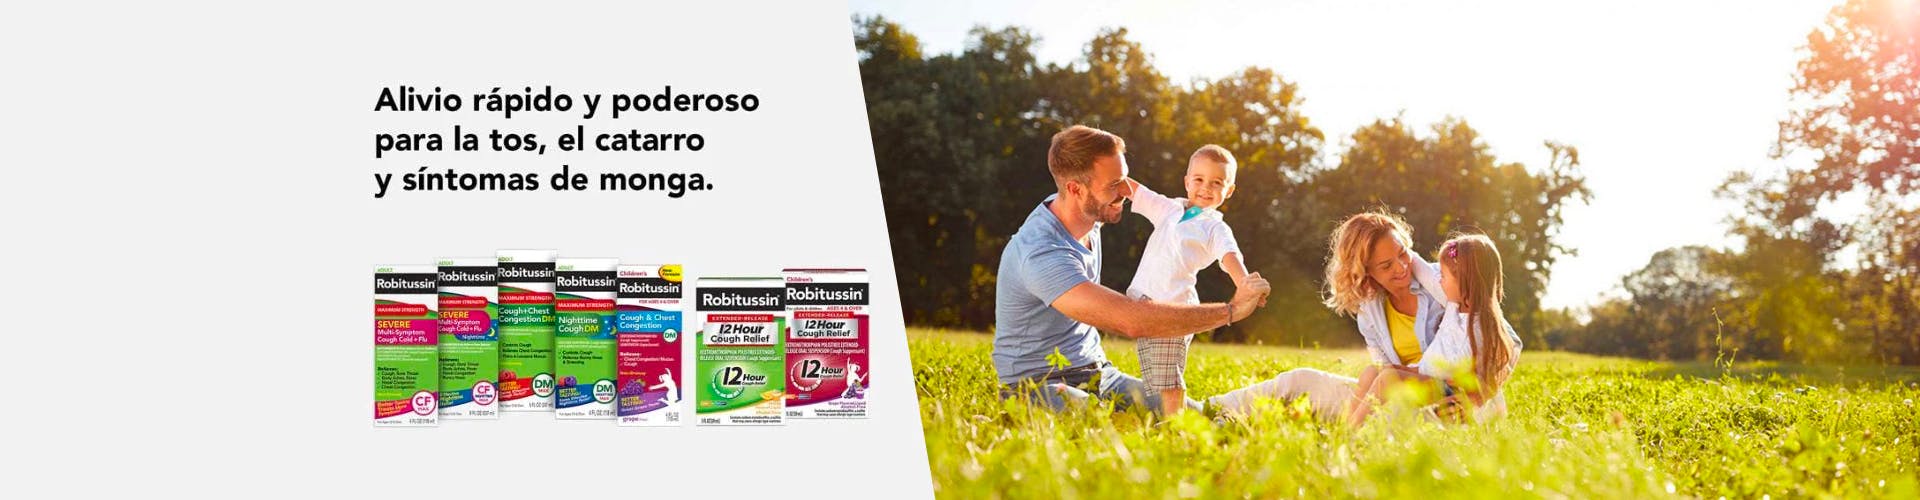 productos Robitussin para adultos y niños con la imagen de una familia feliz